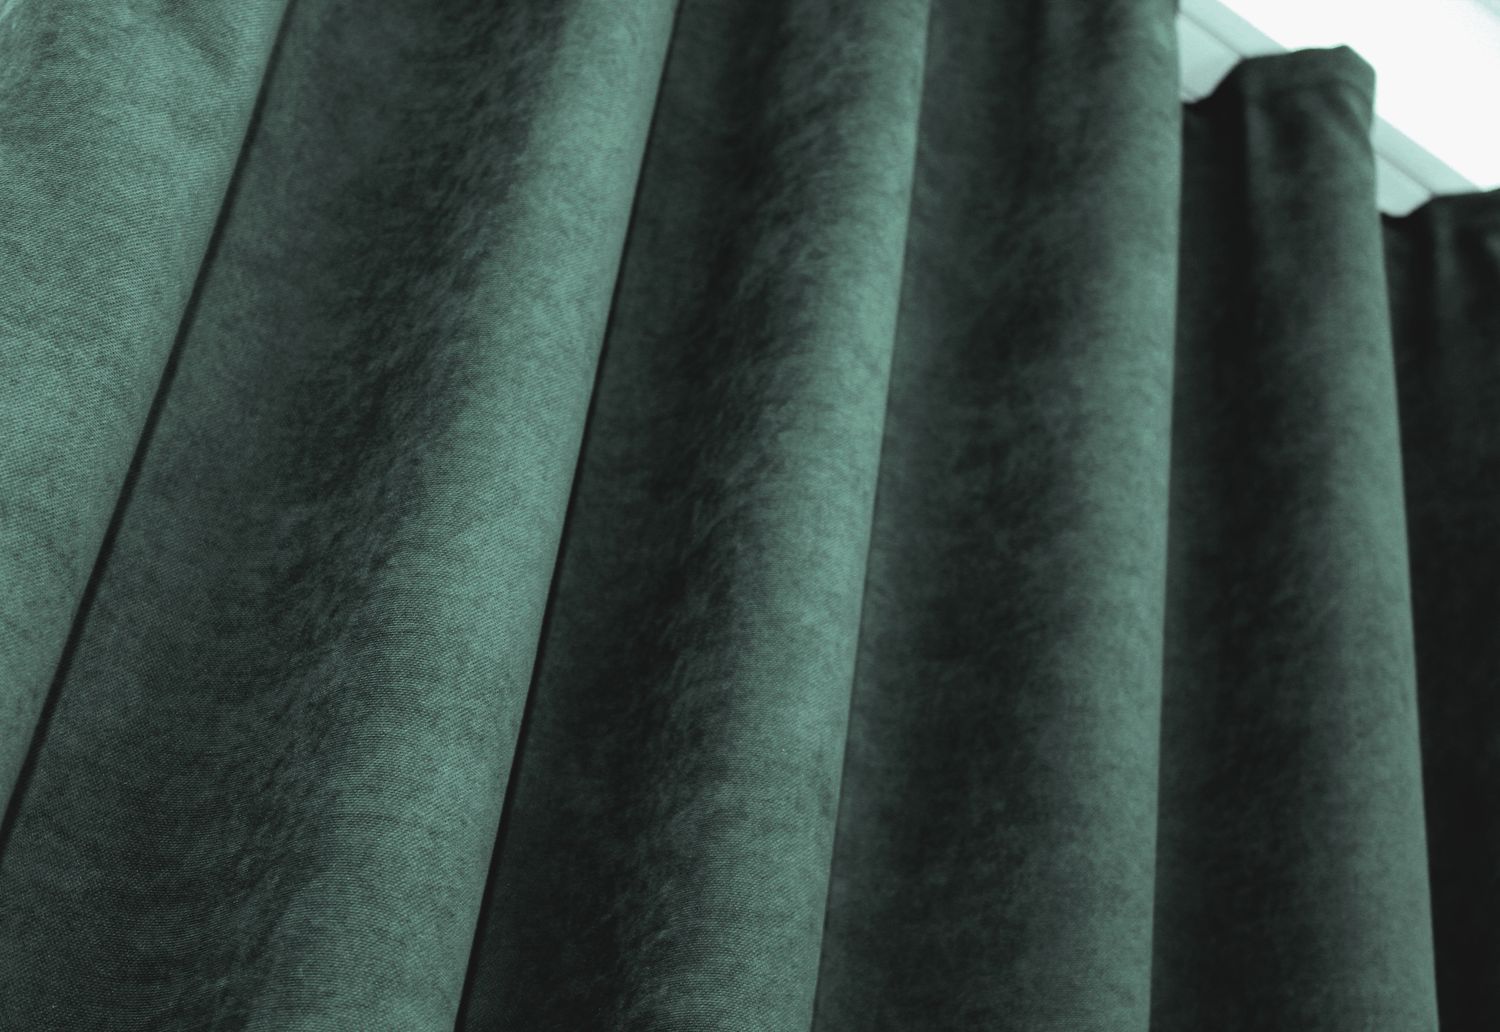 Комплект штор из ткани микровелюр SPARTA цвет зелёный 971ш, Зелёный, Комплект штор (2шт. 1,5х2,85м.), Классические, Без ламбрекена, Длинные, 1,5 м., 2,85 м., 150, 285, 2 - 3 м., В комплекте 2 шт., Тесьма